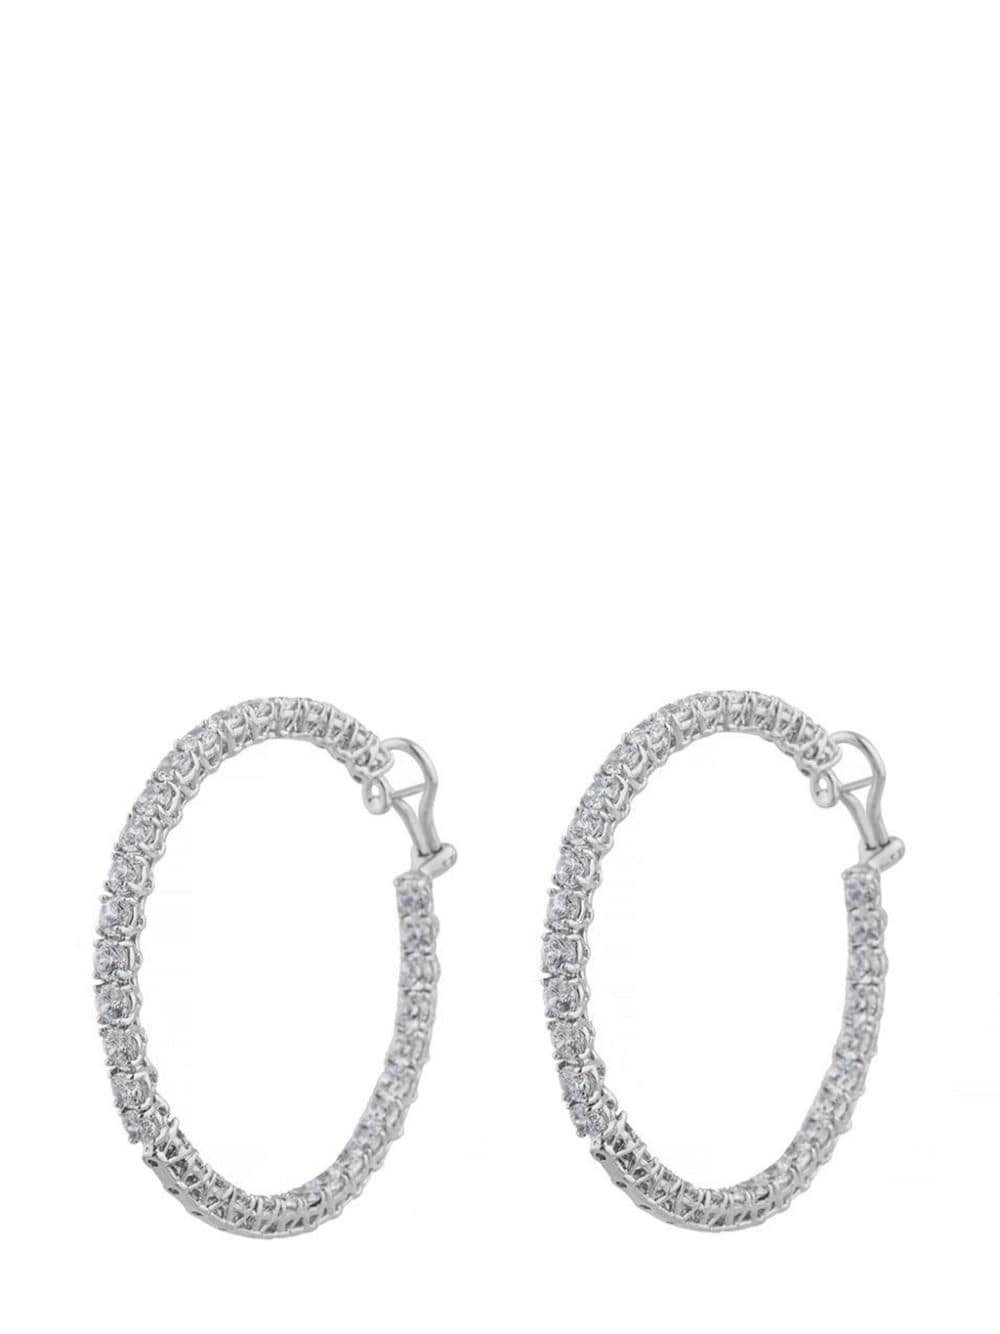 embellished hoop earrings